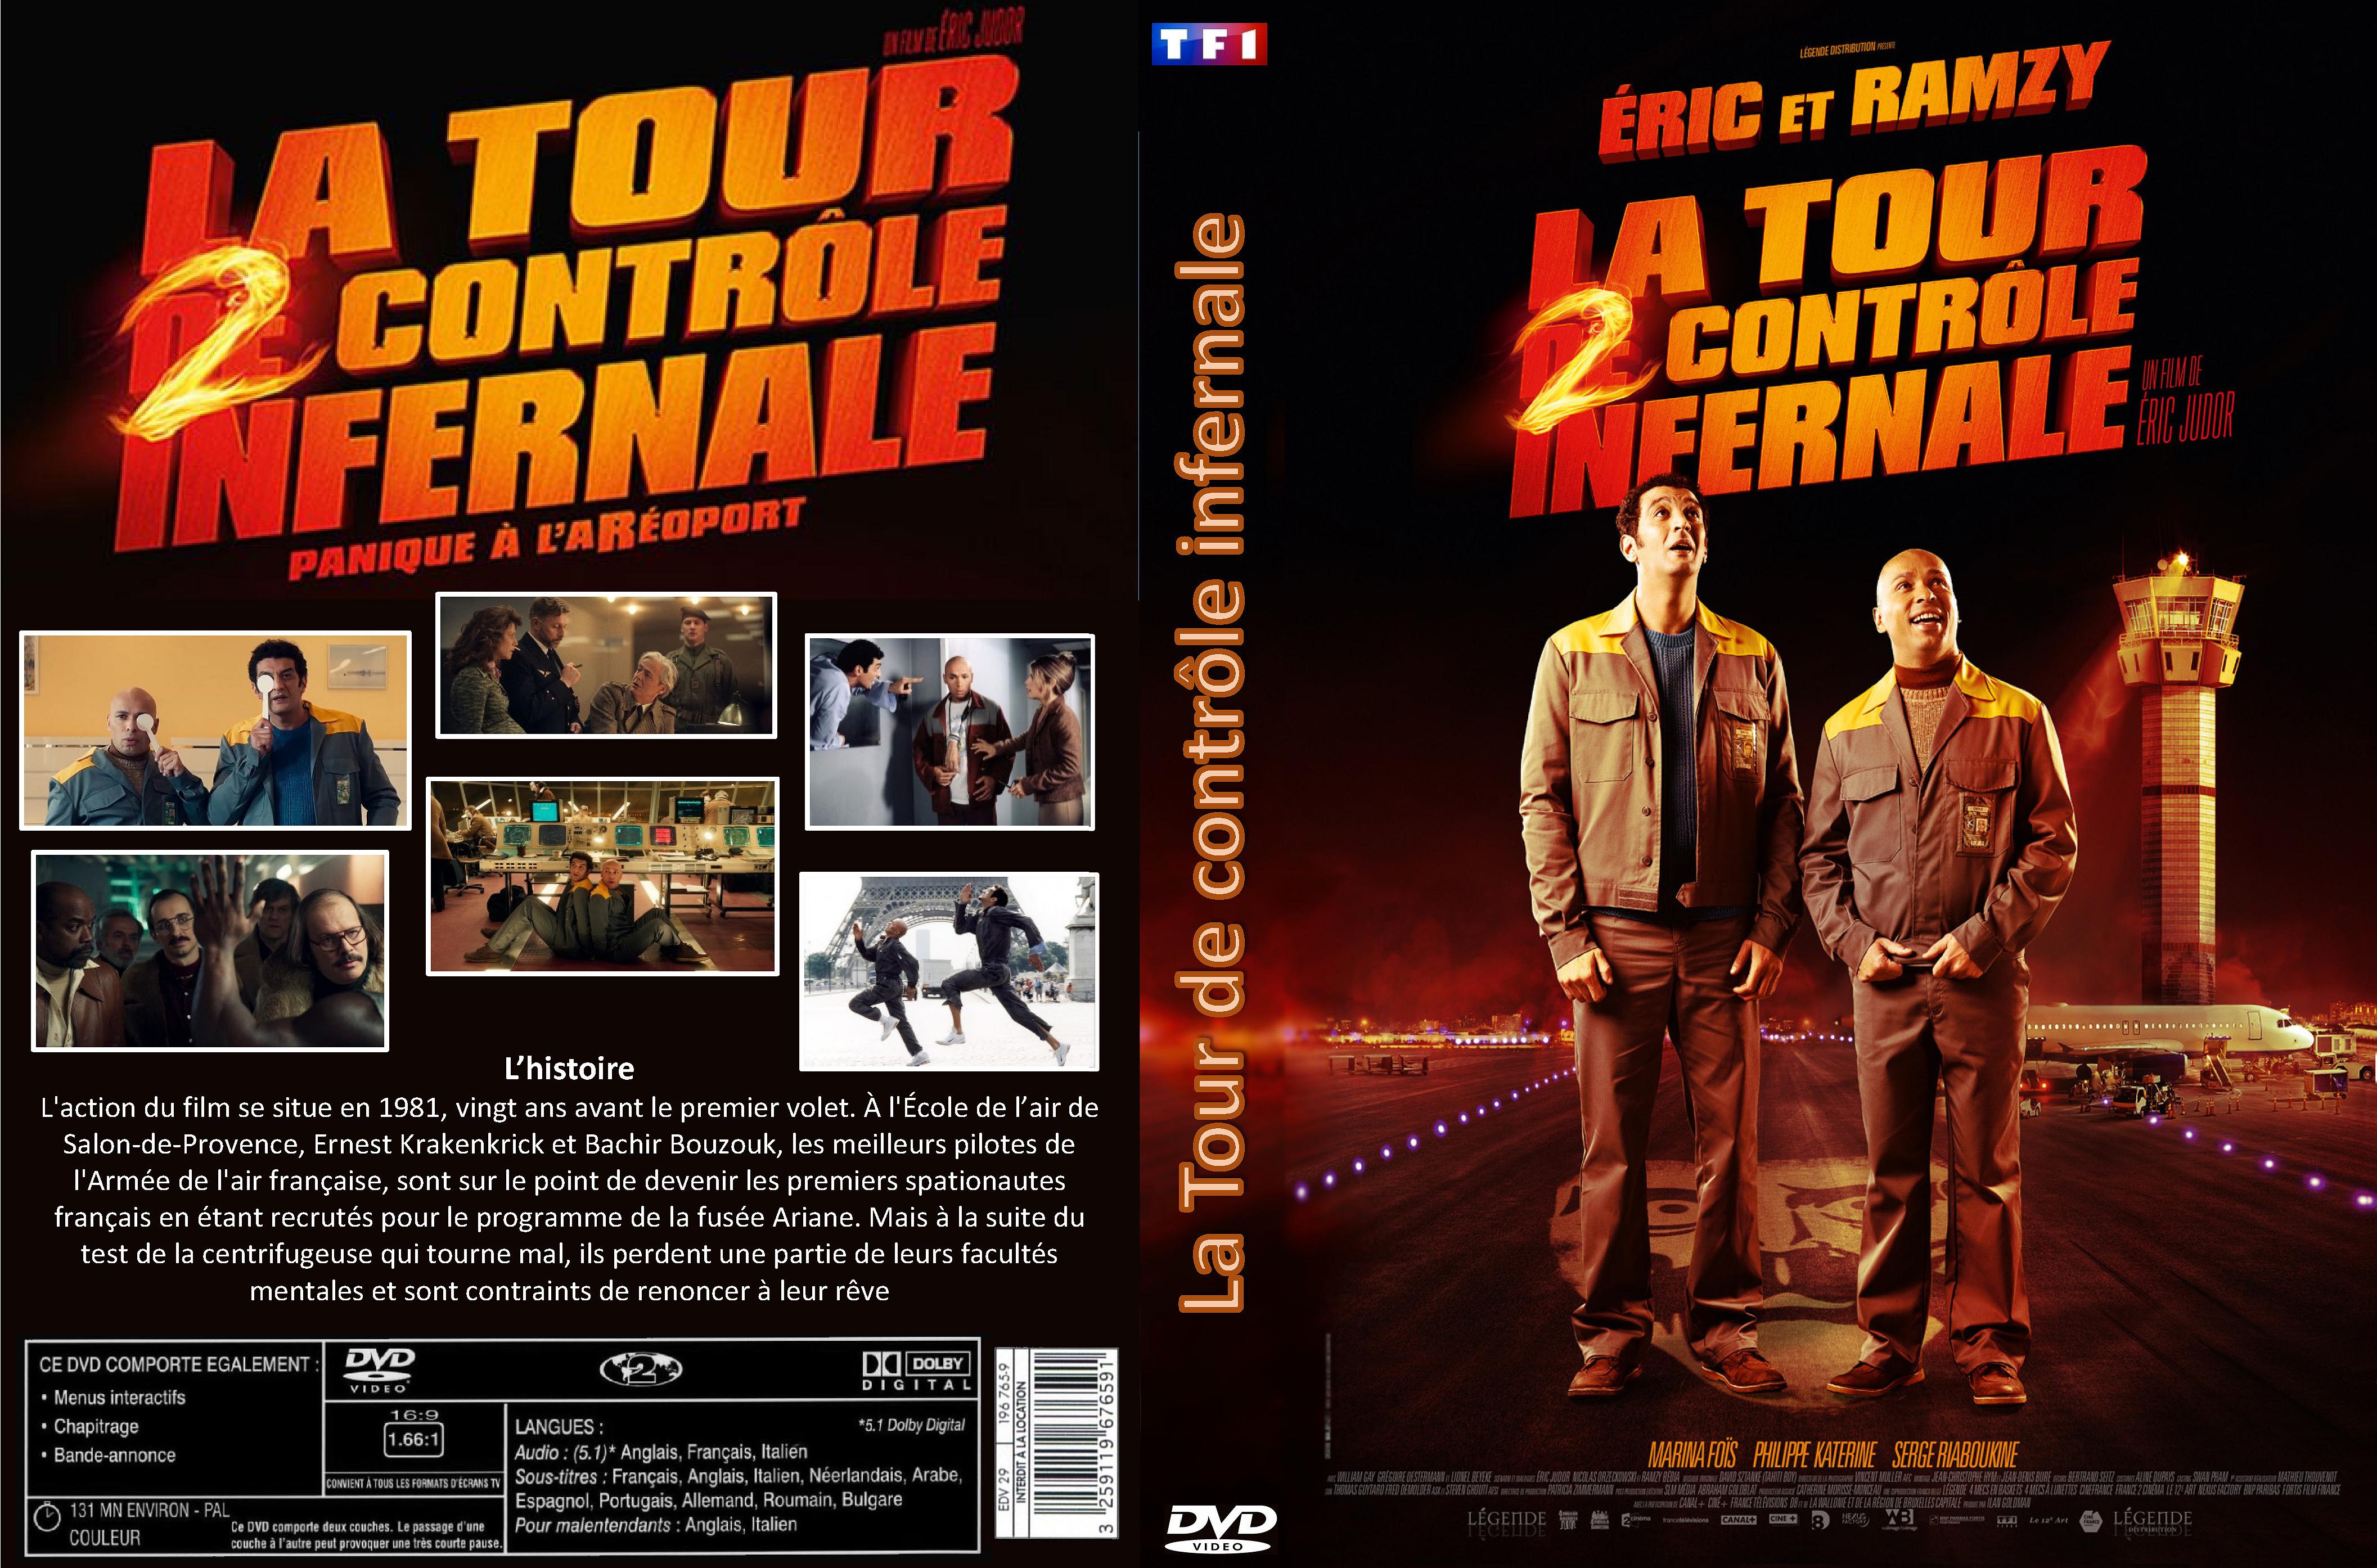 Jaquette DVD La Tour 2 Contrle Infernale custom